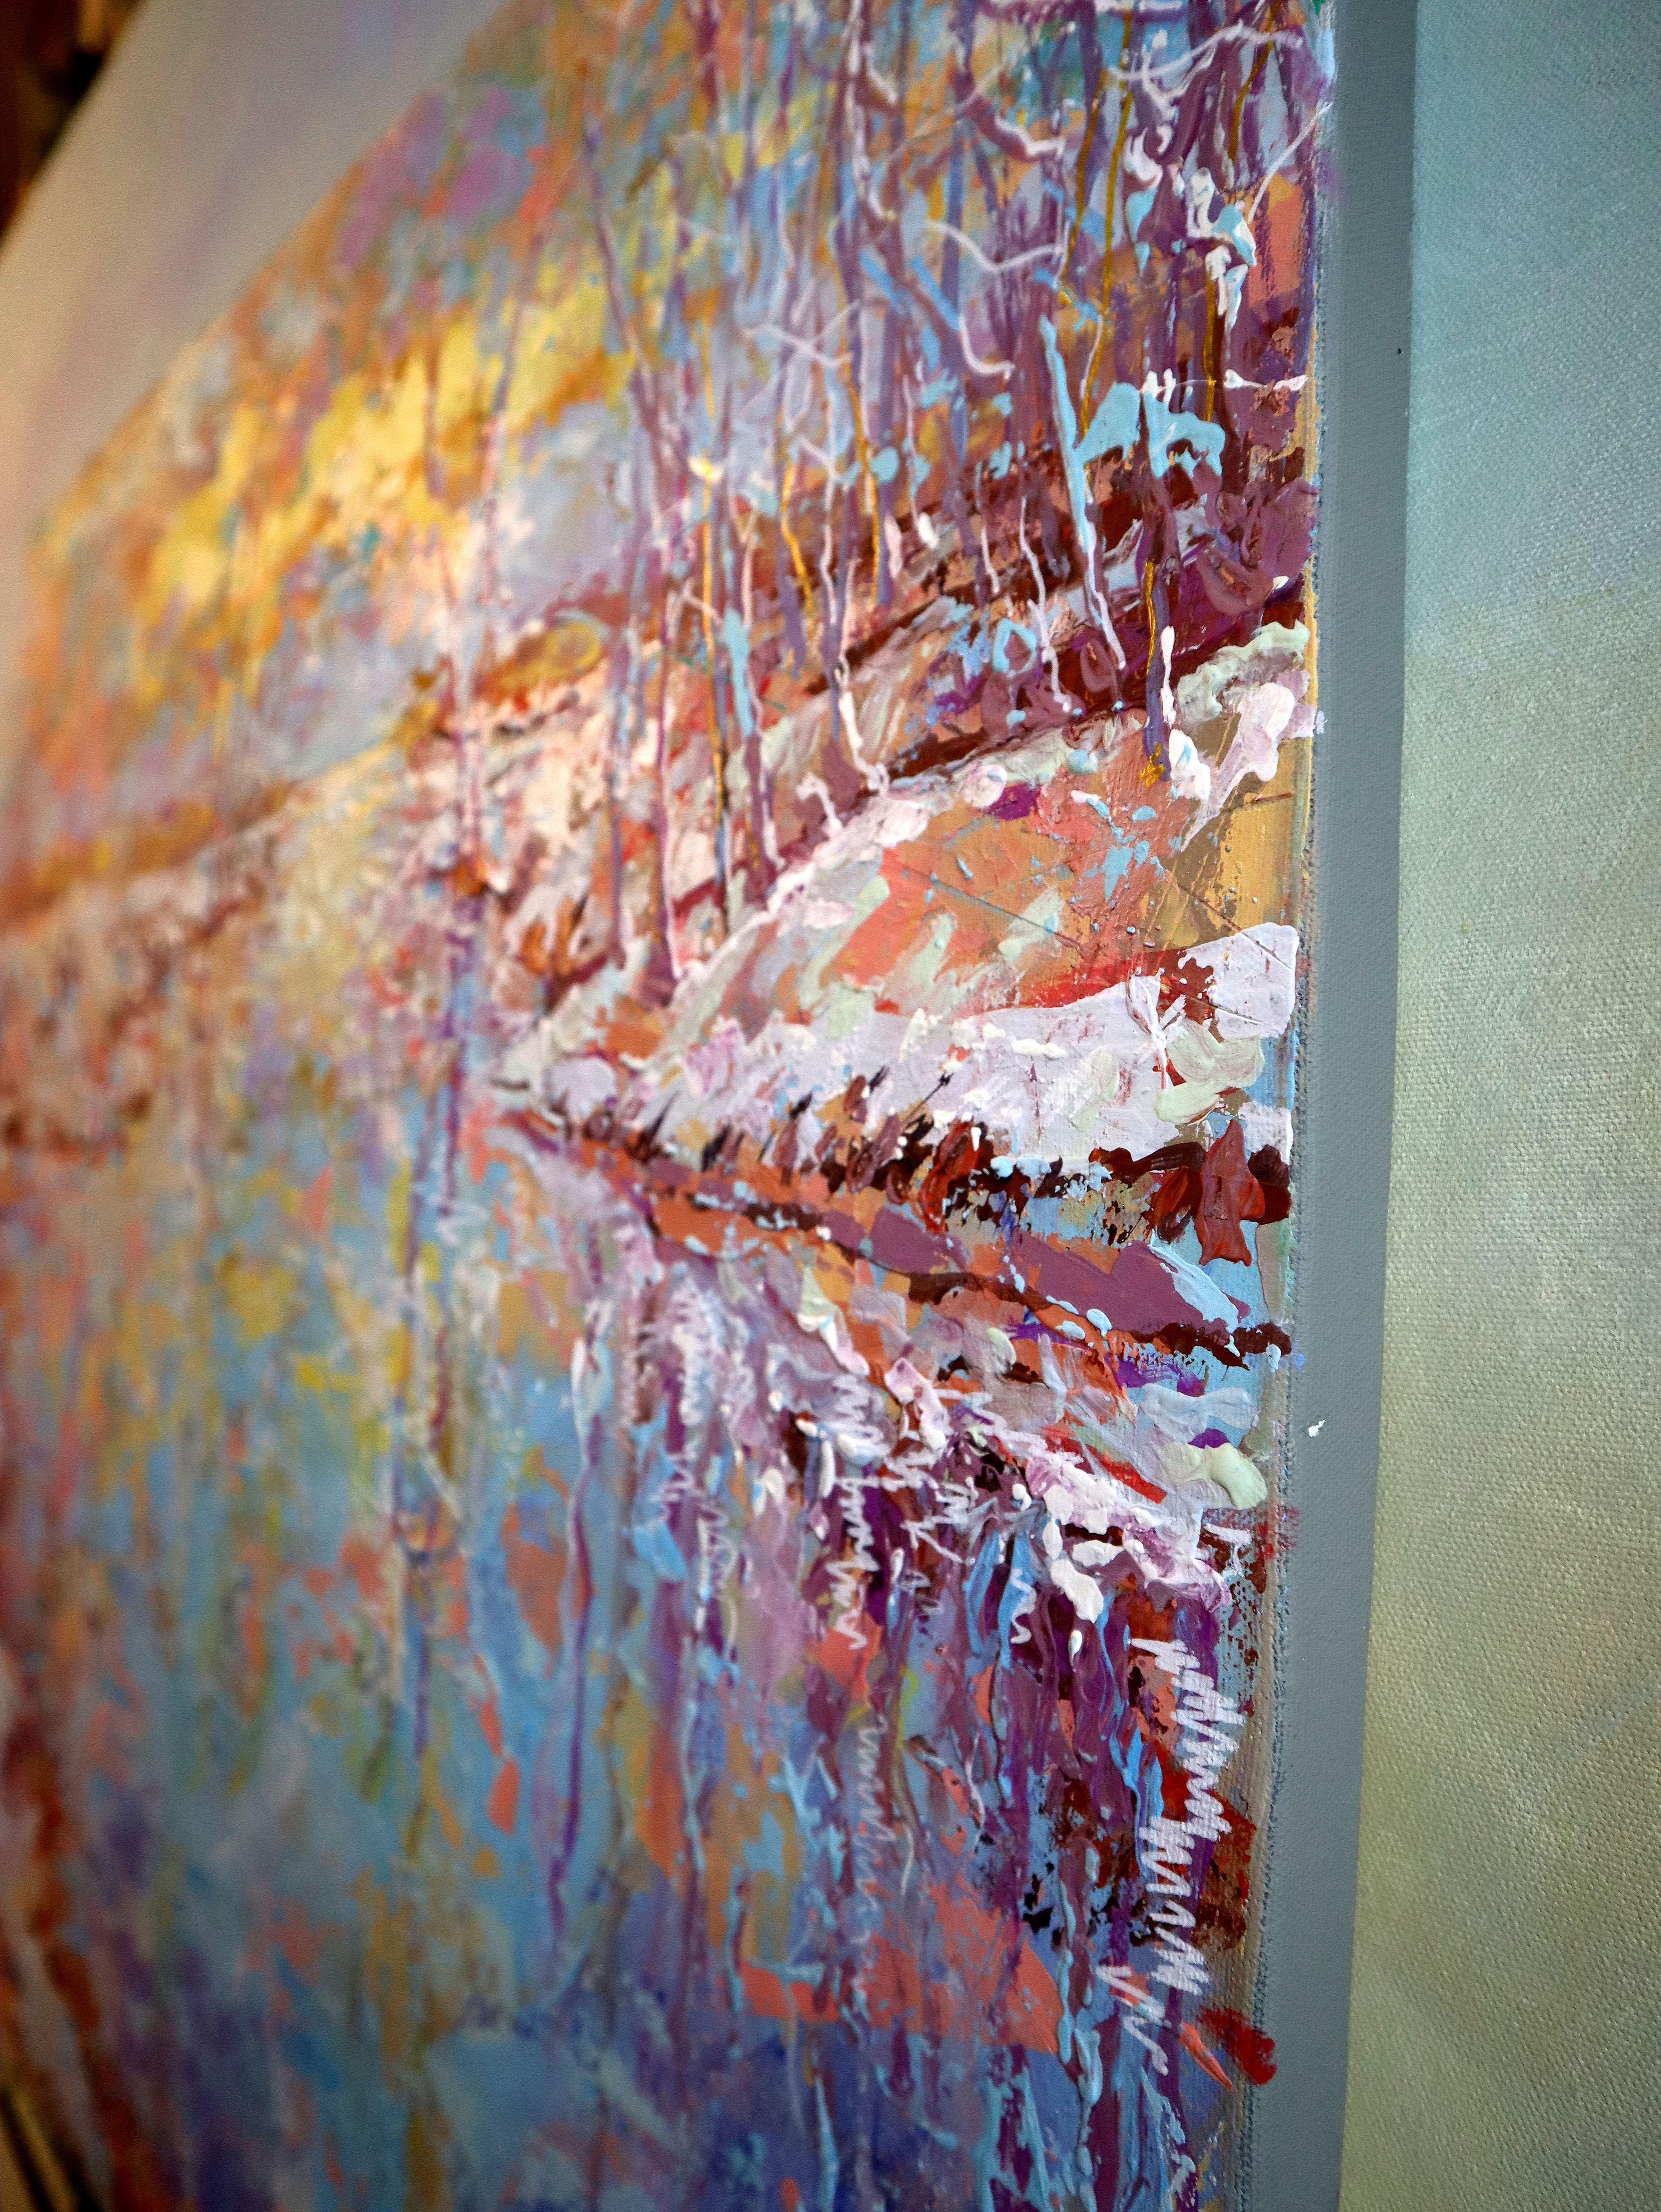 Auf dieser Leinwand habe ich Acryl- und Ölfarben übereinander geschichtet, um die transformative Energie der Natur einzufangen, wenn sie den Winter umarmt. Meine Pinselstriche tanzen mit den Farben und laden zu impressionistischen Einblicken in die